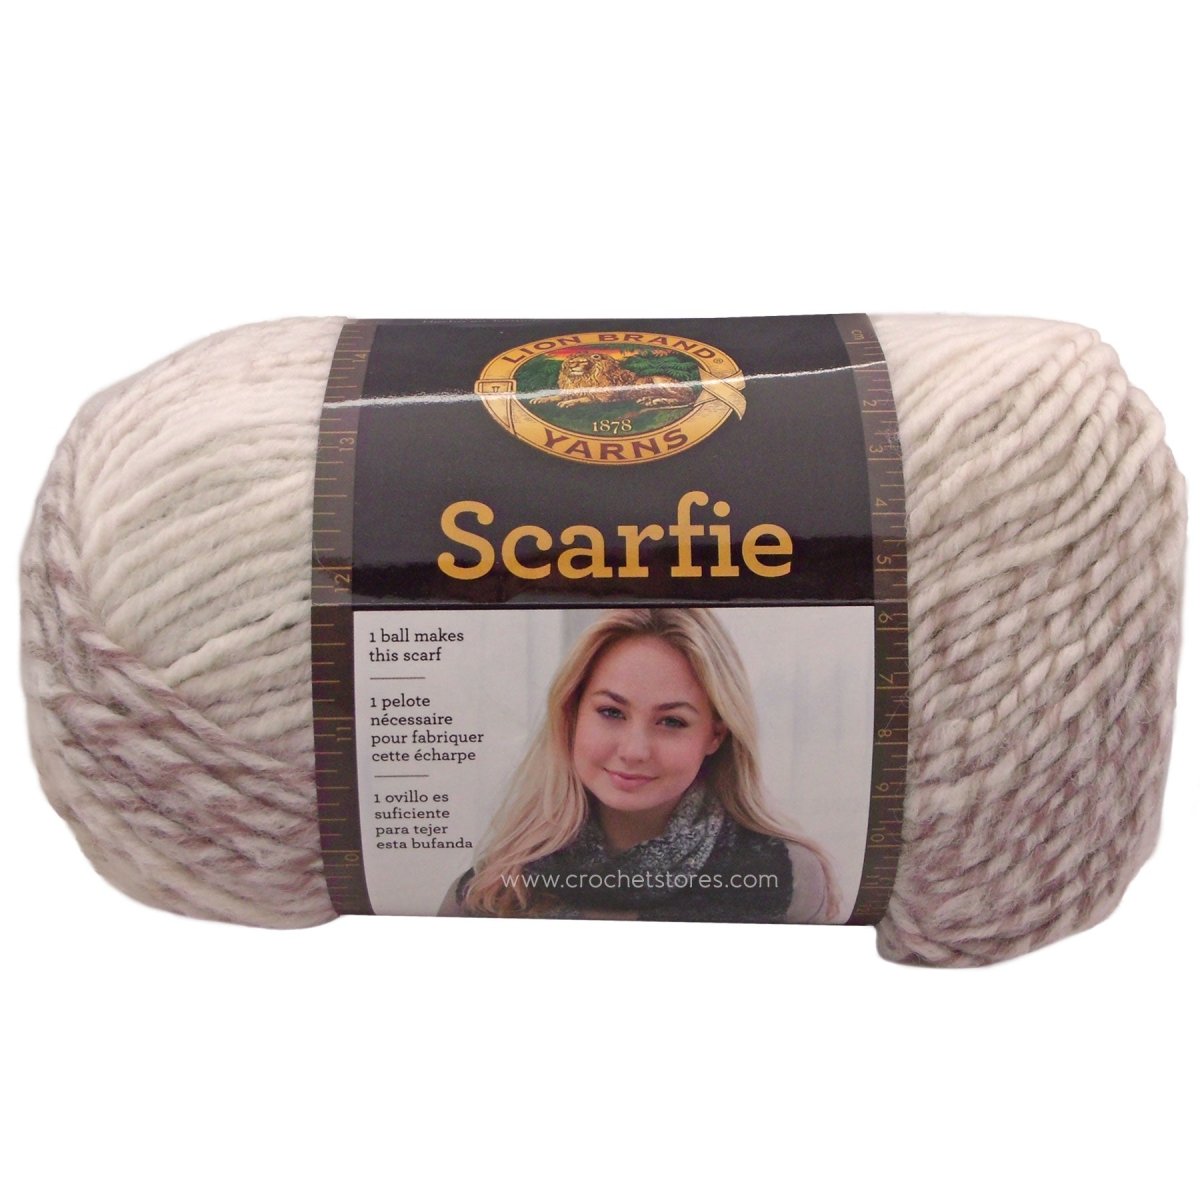 SCARFIE - Crochetstores826-200